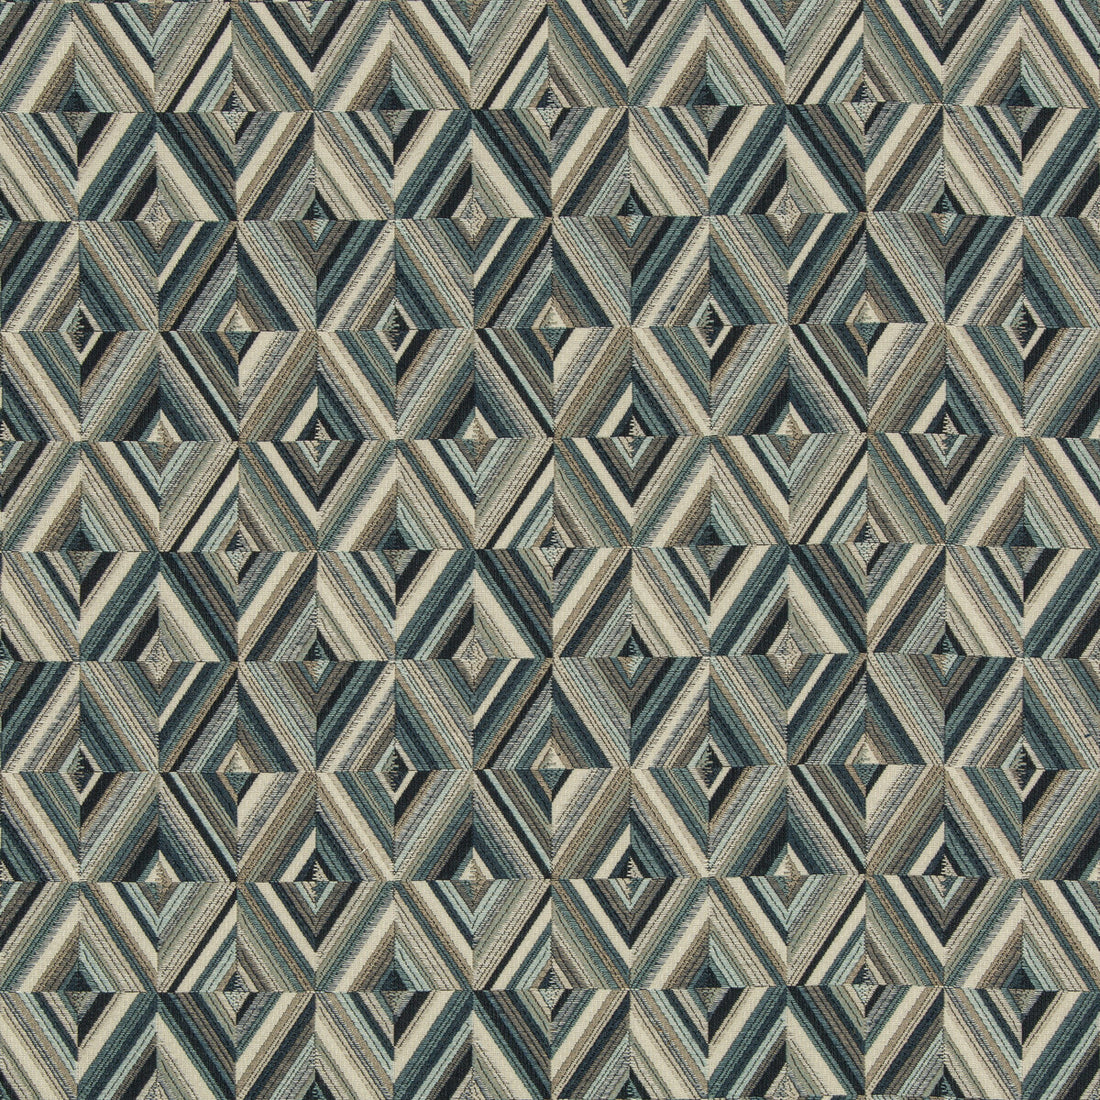 Kravet Design fabric in 35638-516 color - pattern 35638.516.0 - by Kravet Design